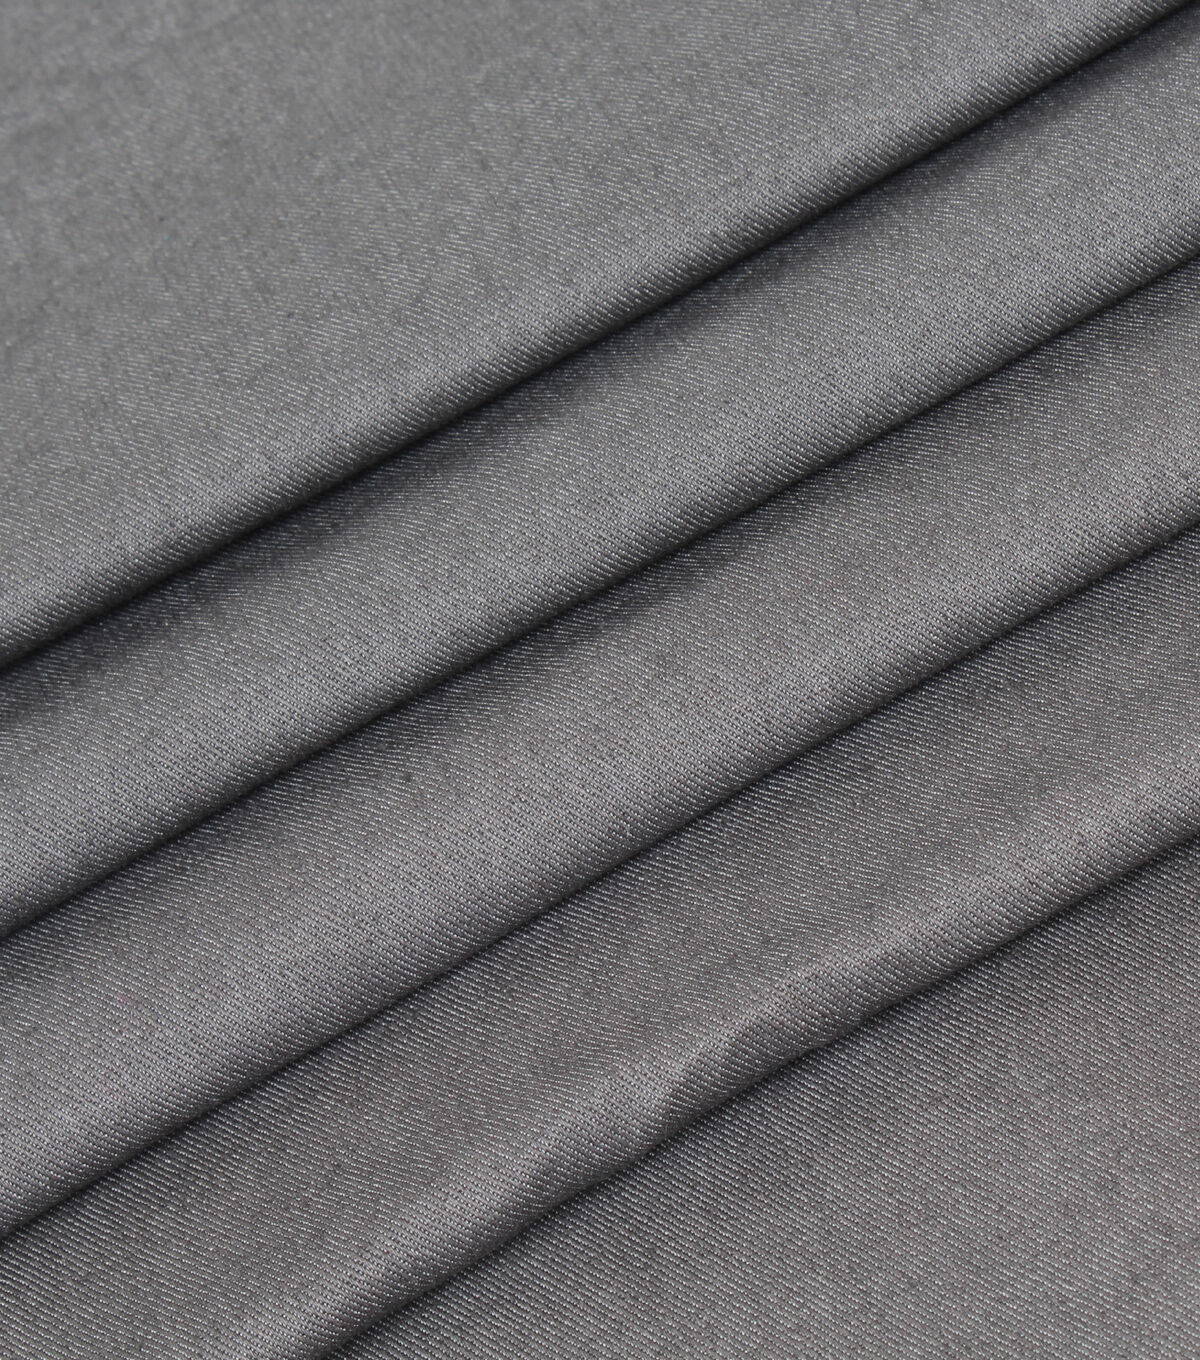 ZZ1084-S Fashion 4 Way Stretch Denim Fabric - SEAZON Textile